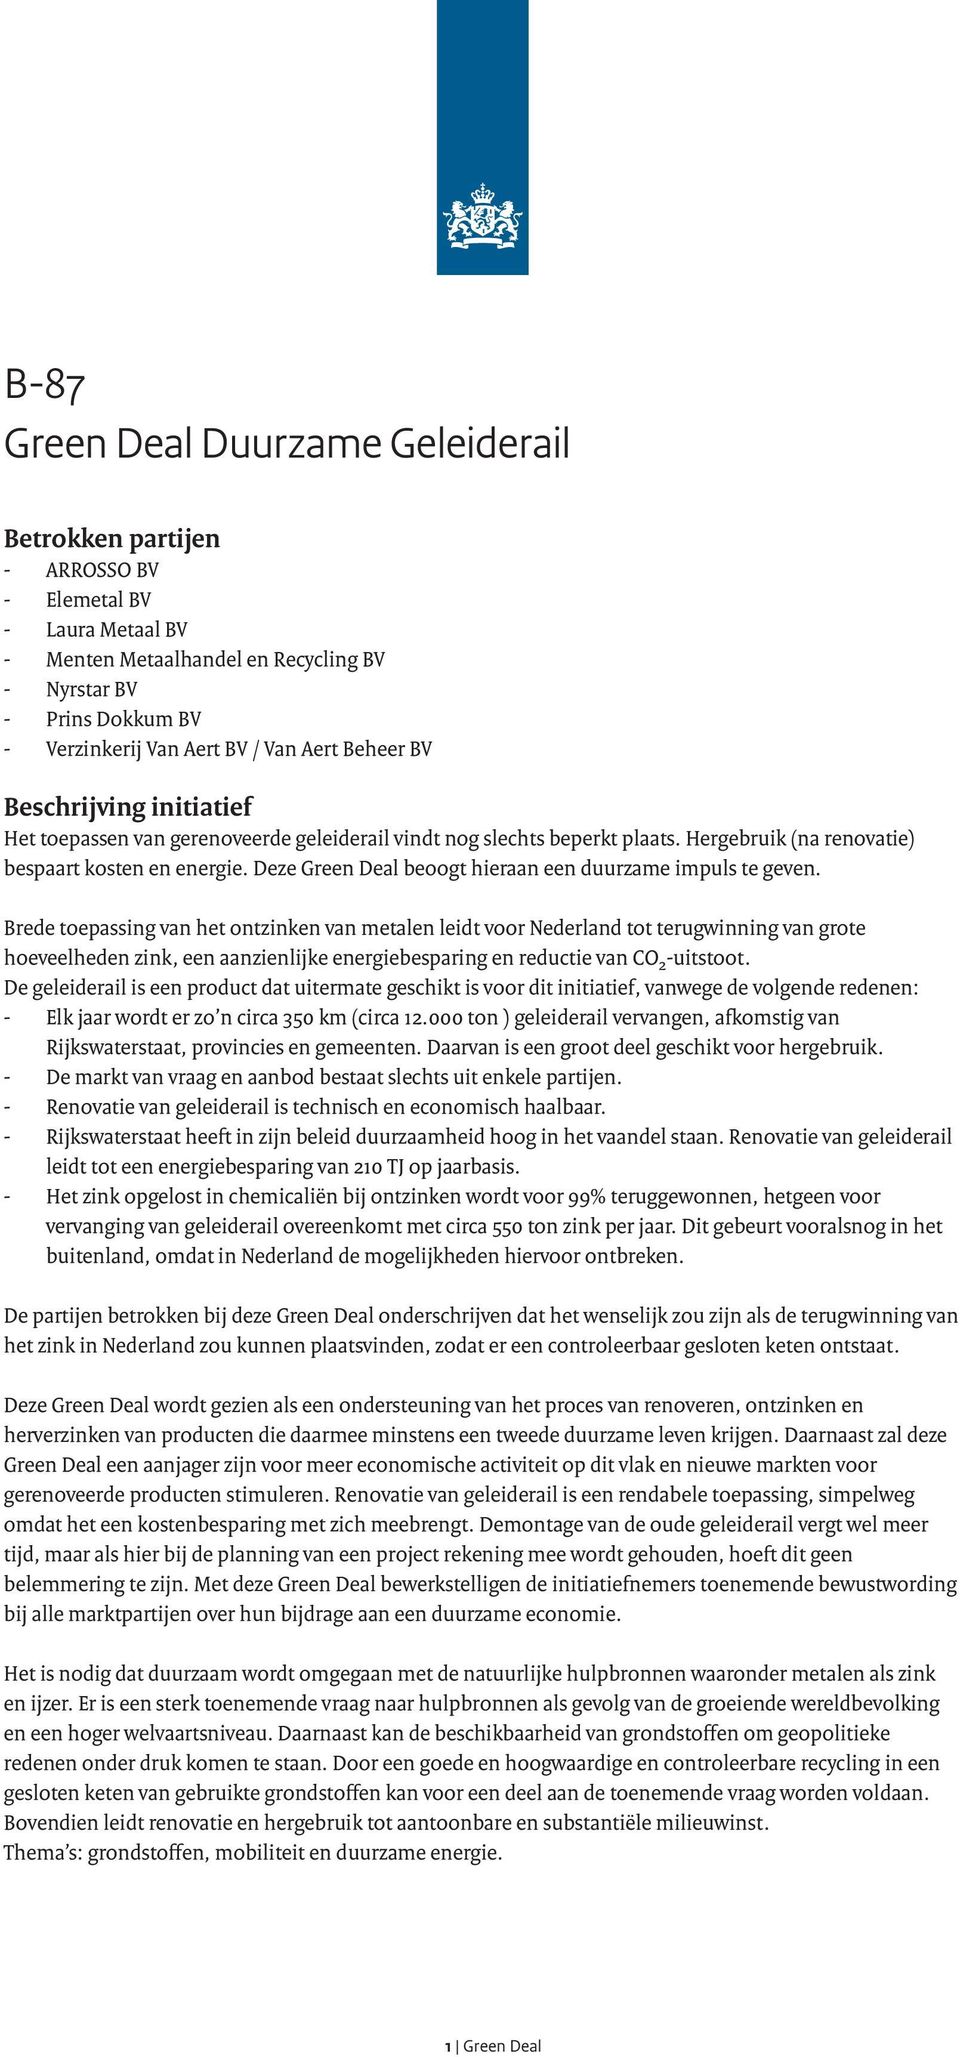 Brede toepassing van het ontzinken van metalen leidt voor Nederland tot terugwinning van grote hoeveelheden zink, een aanzienlijke energiebesparing en reductie van CO 2 -uitstoot.